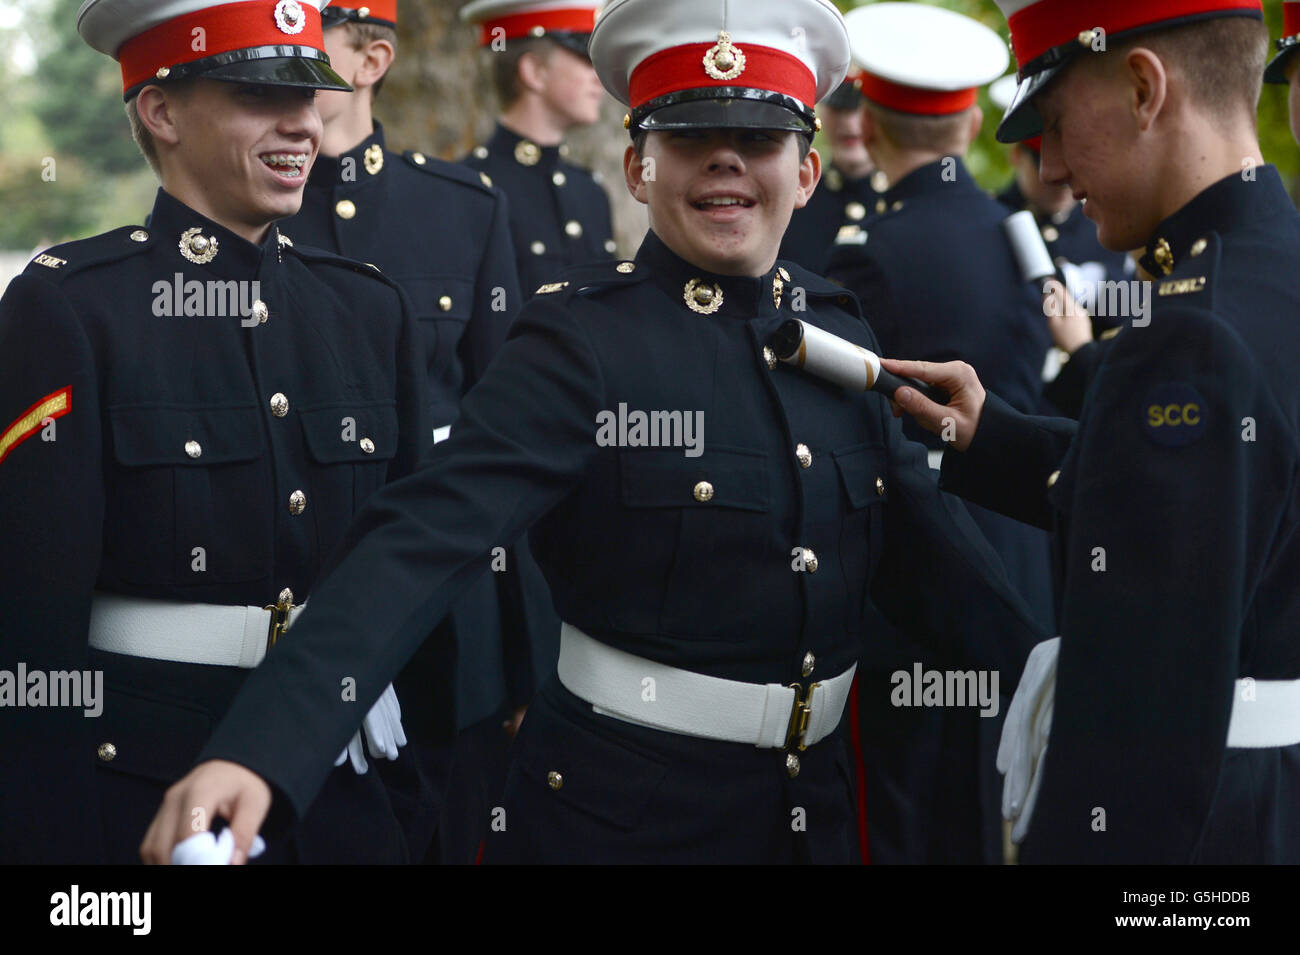 Les cadets de la Marine de Yankee Company Royal Marine Cadets, dans la région du Nord, se préparent à participer à une parade de la journée de Trafalgar, de Horse Guards Parade Trafalgar Square à Trafalgar Square à Londres. Banque D'Images